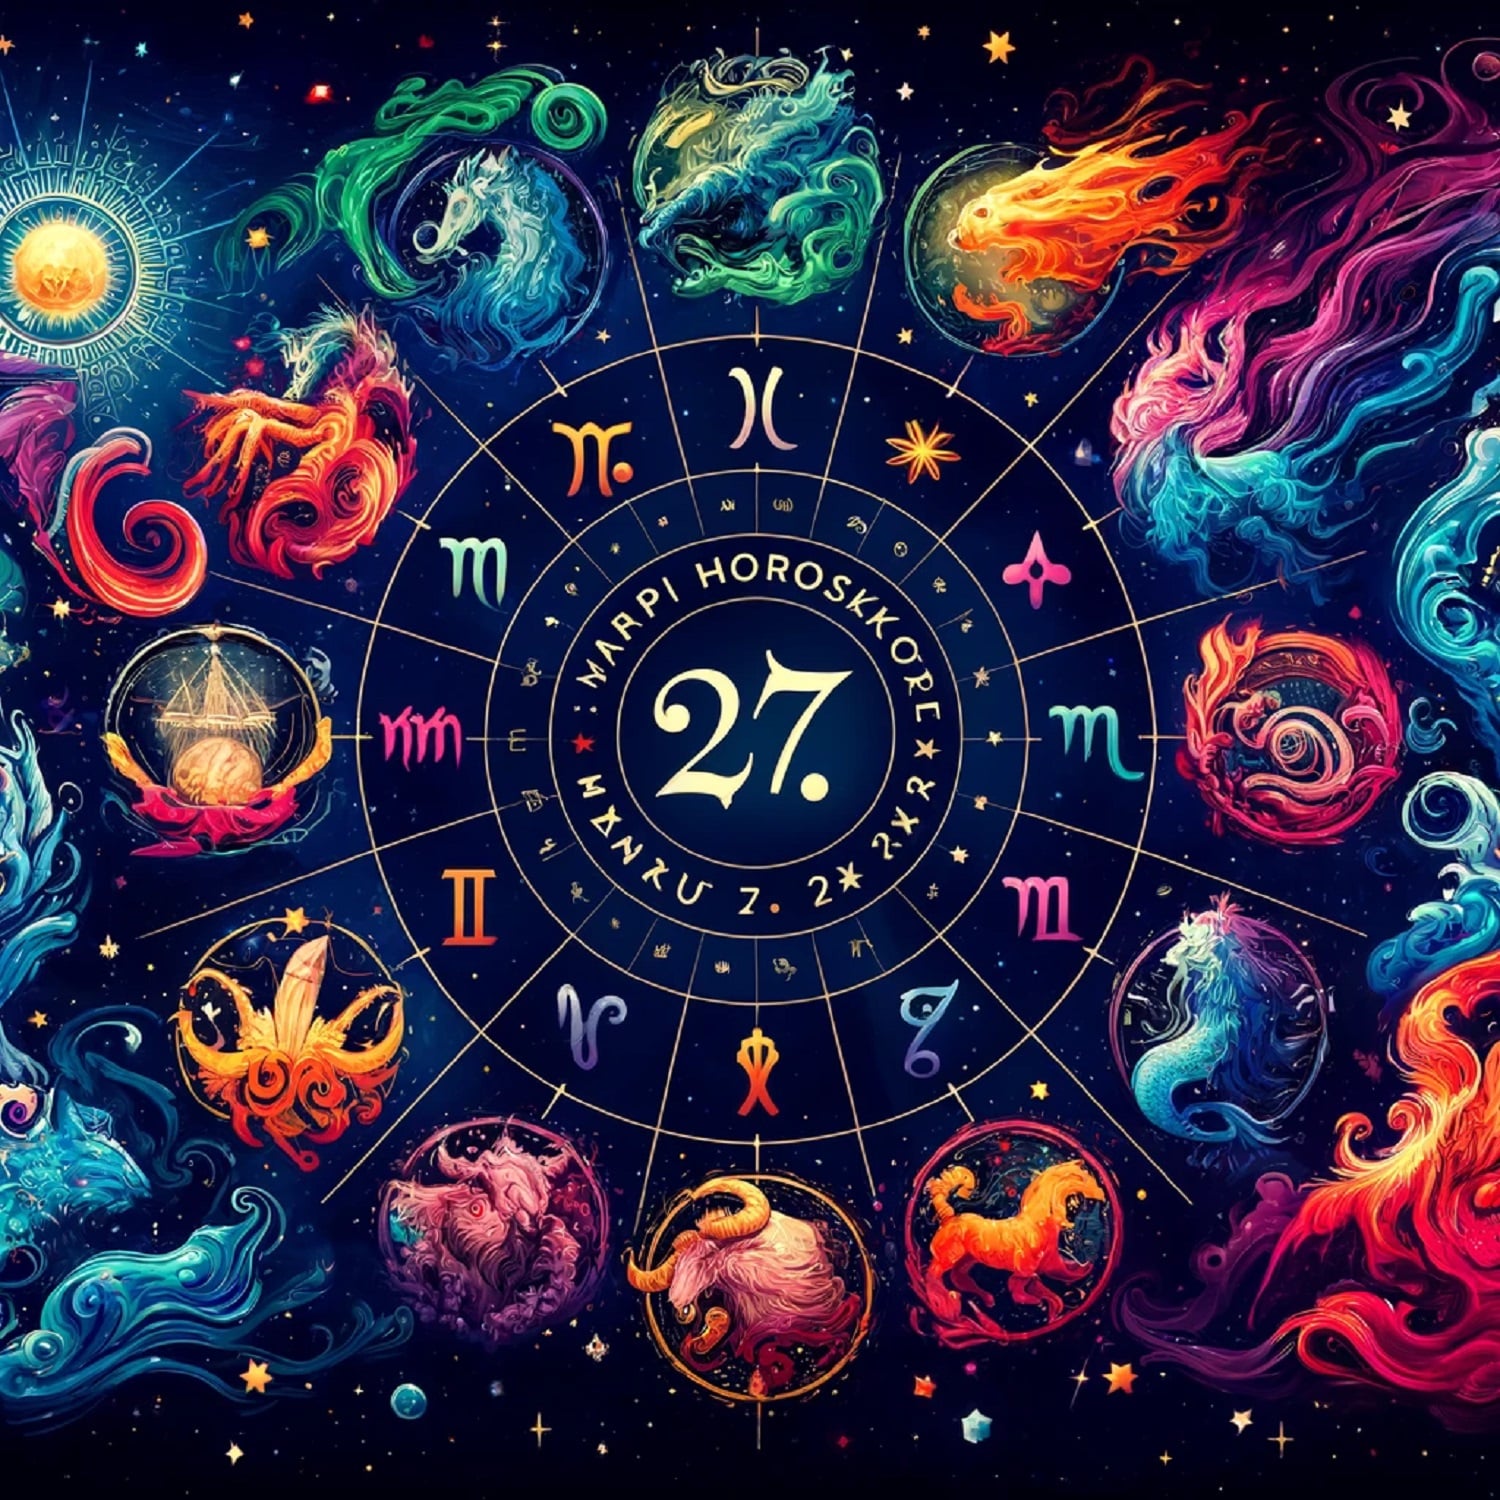 május 27 horoszkóp